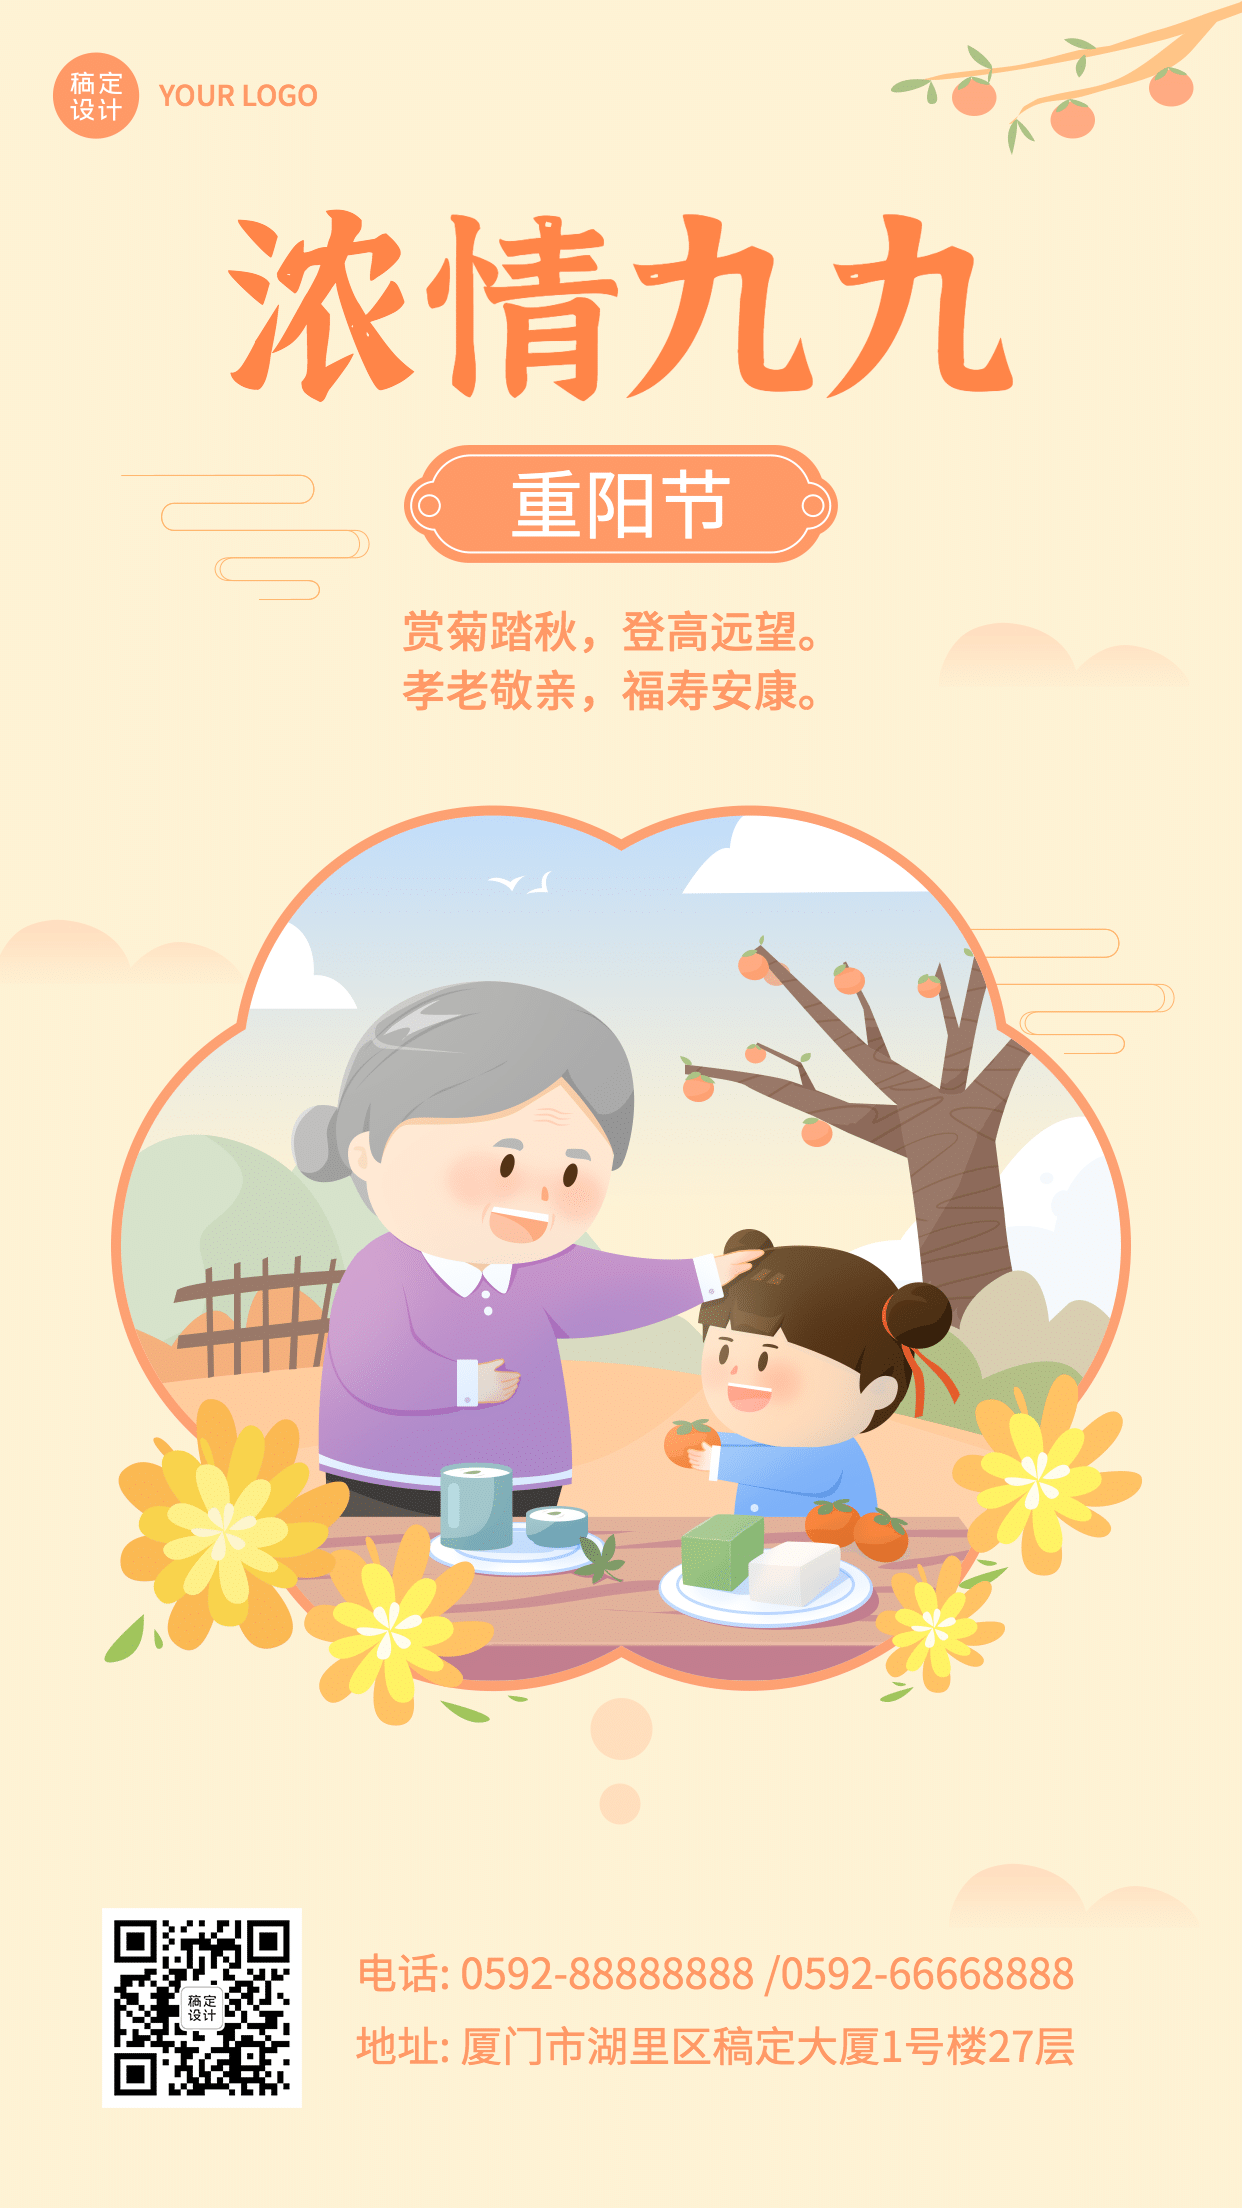 九九重阳节祝福简洁可爱手绘海报